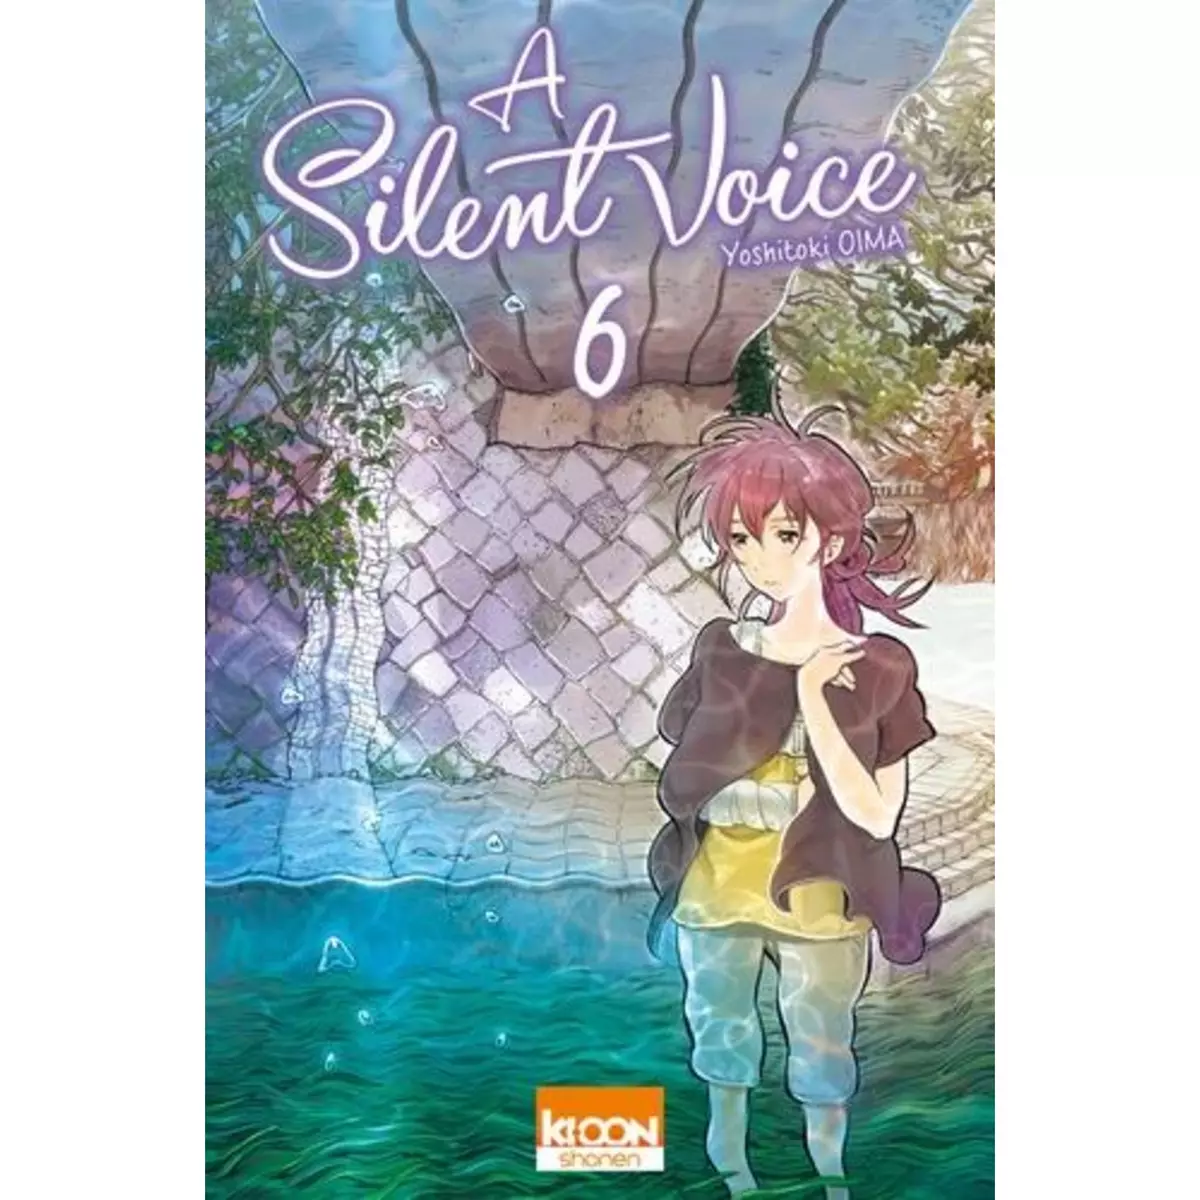  A SILENT VOICE TOME 6, Oima Yoshitoki